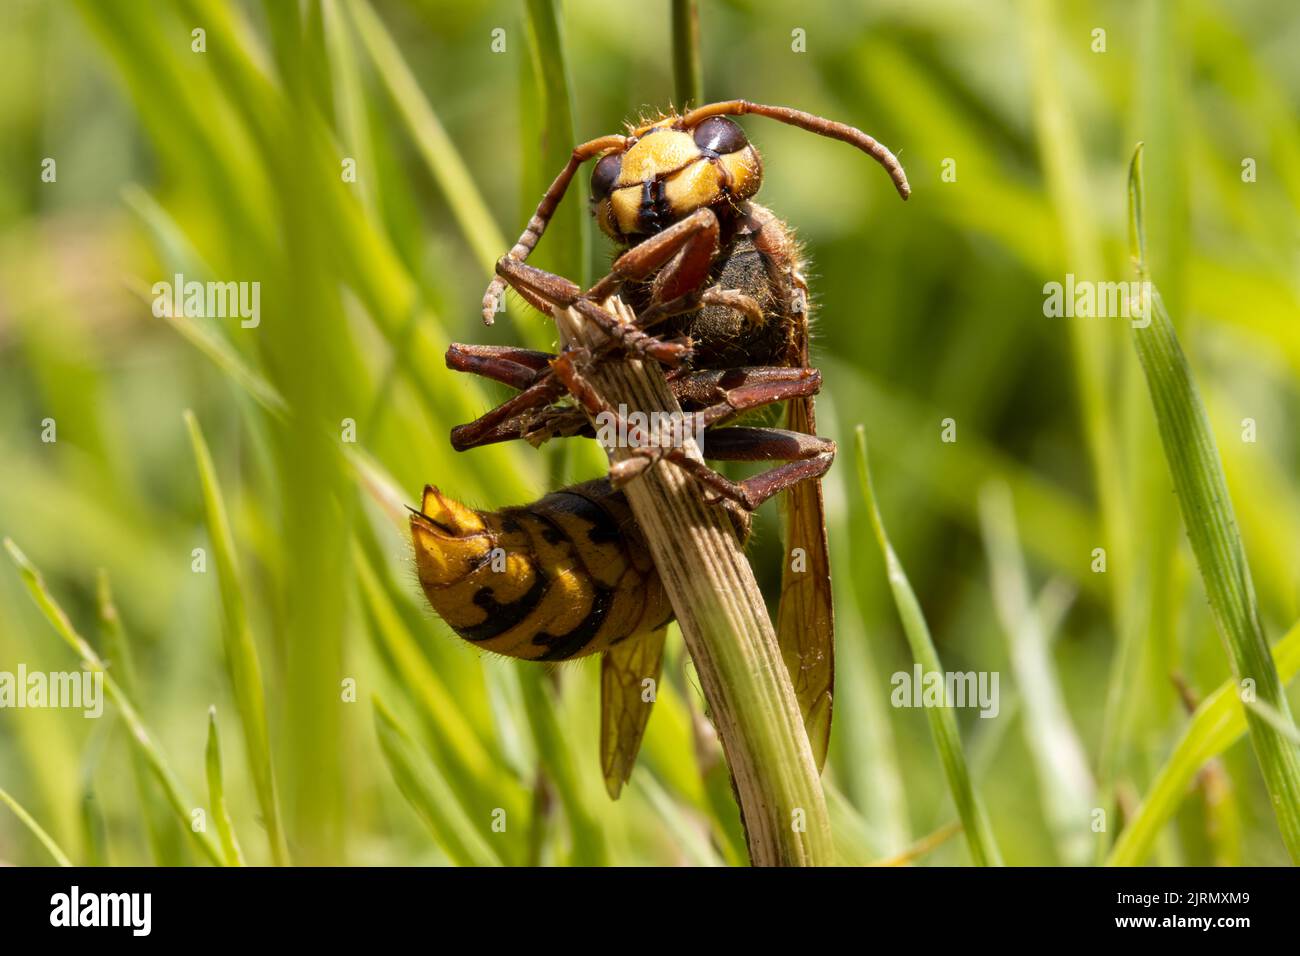 Un calabrone si aggrappa a una lama asciutta nell'erba e guarda intorno Foto Stock